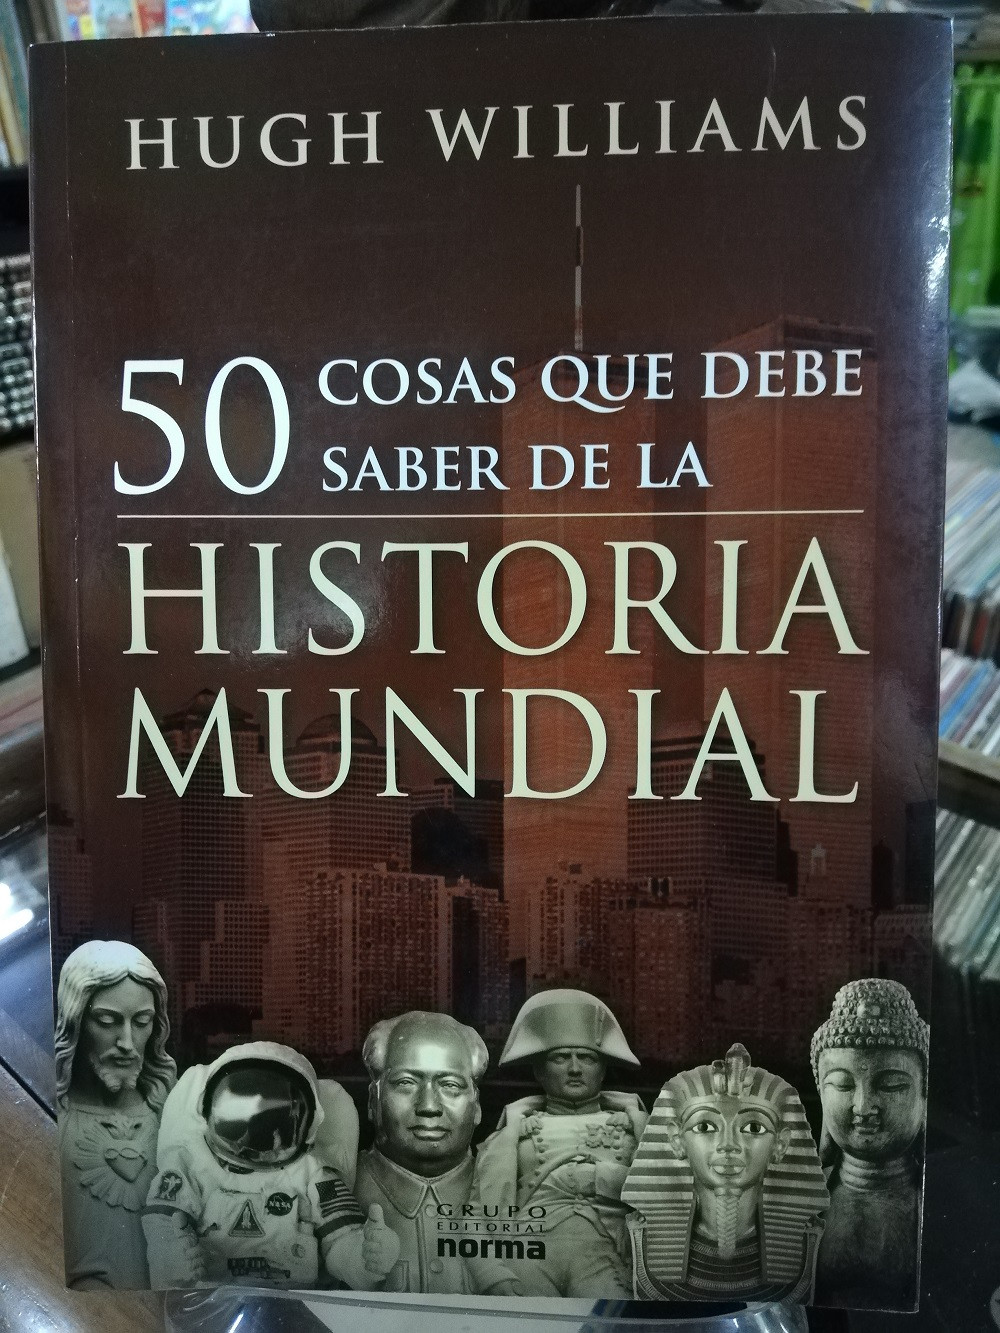 Imagen 50 COSAS QUE DEBE SABER DE LA HISTORIA MUNDIAL - HUGH WILLIAMS